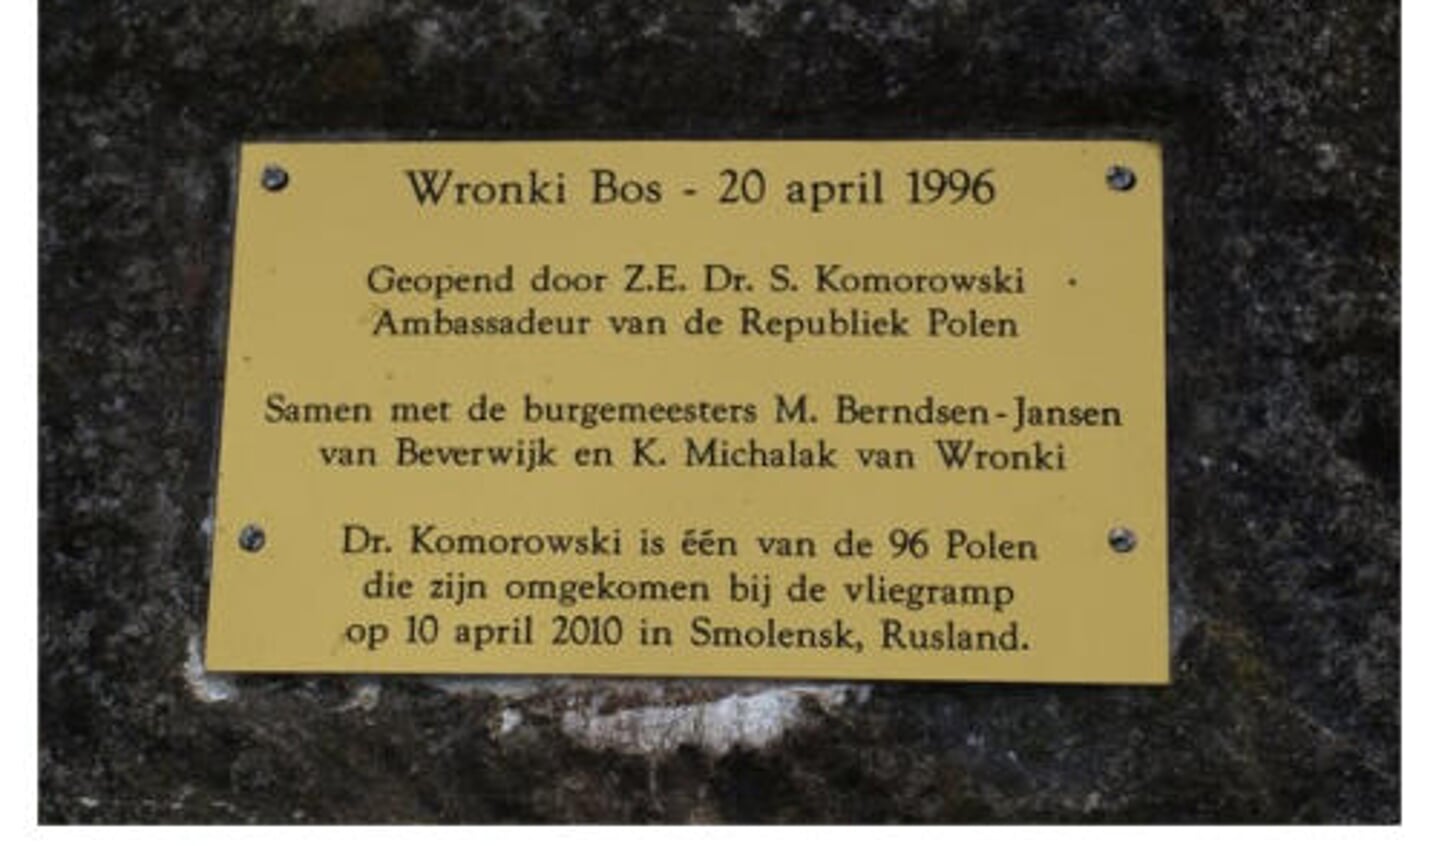 De gedenksteen die is geplaatst bij de opening van het Wronki Bos in Beverwijk, 1996.